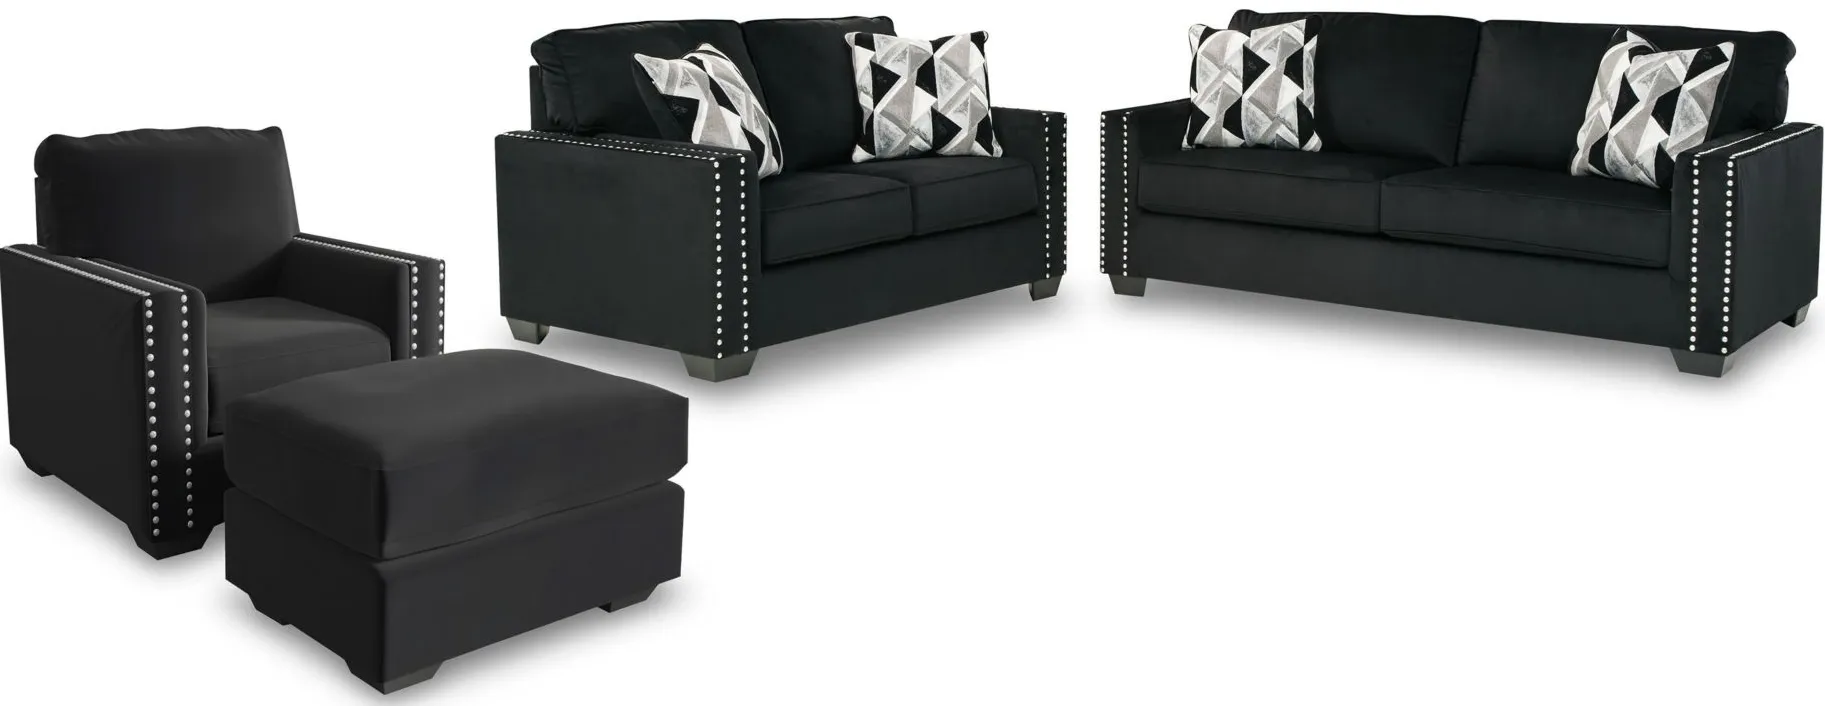 Gleston 4-pc Set in Onyx by Ashley Furniture